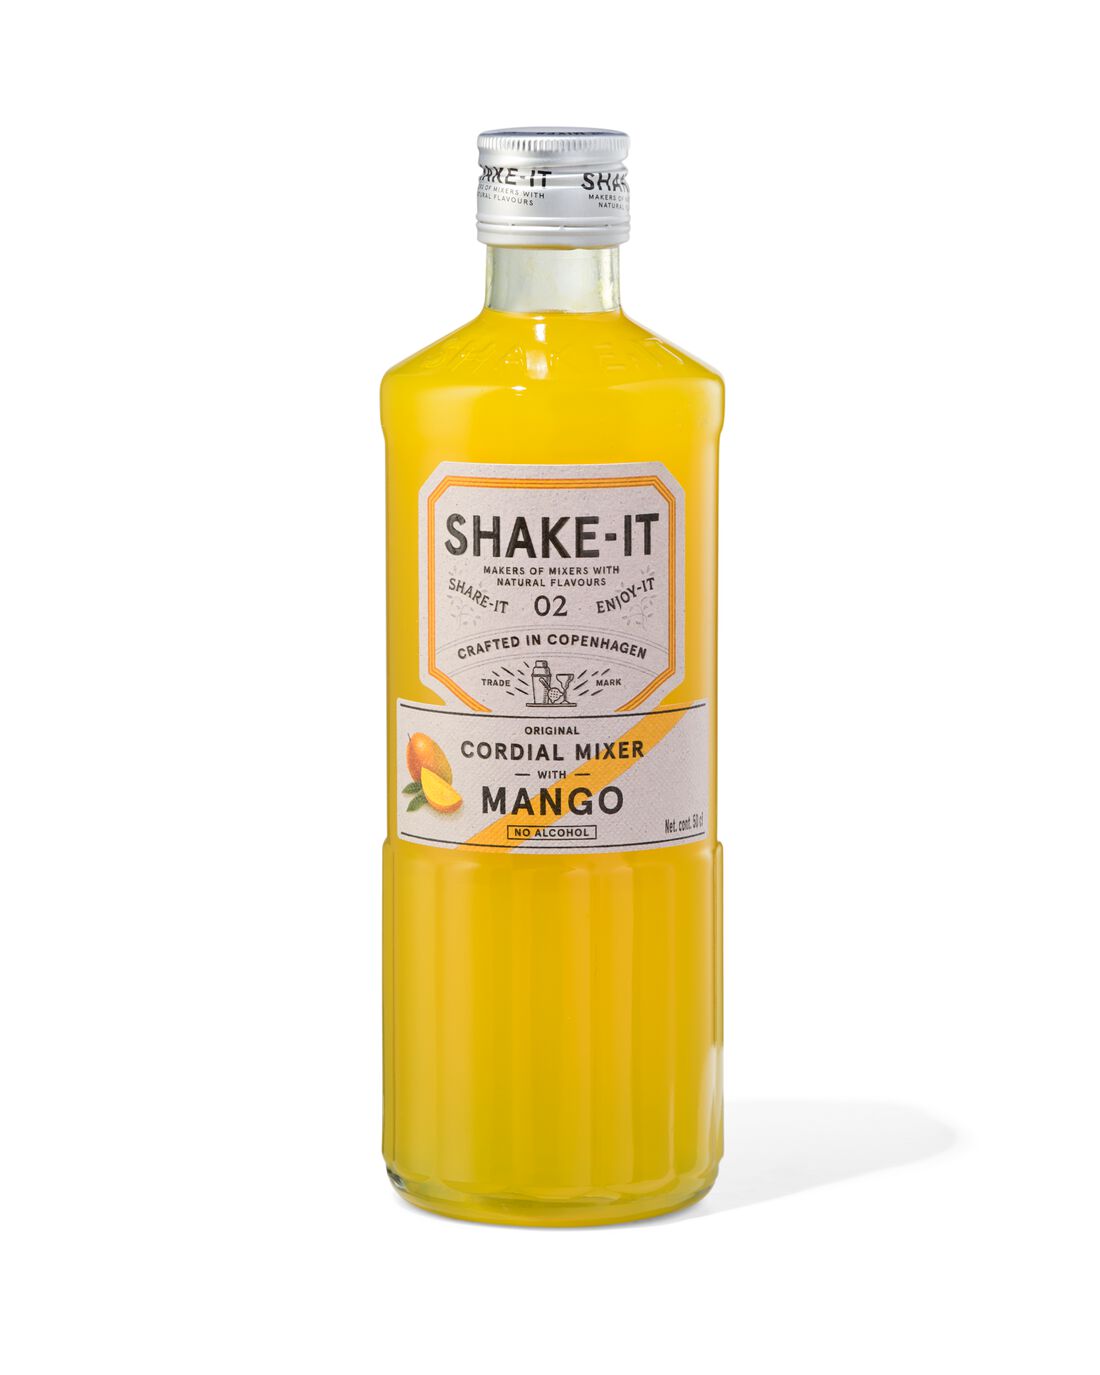 HEMA Shake-it Mixer Mango 500ml